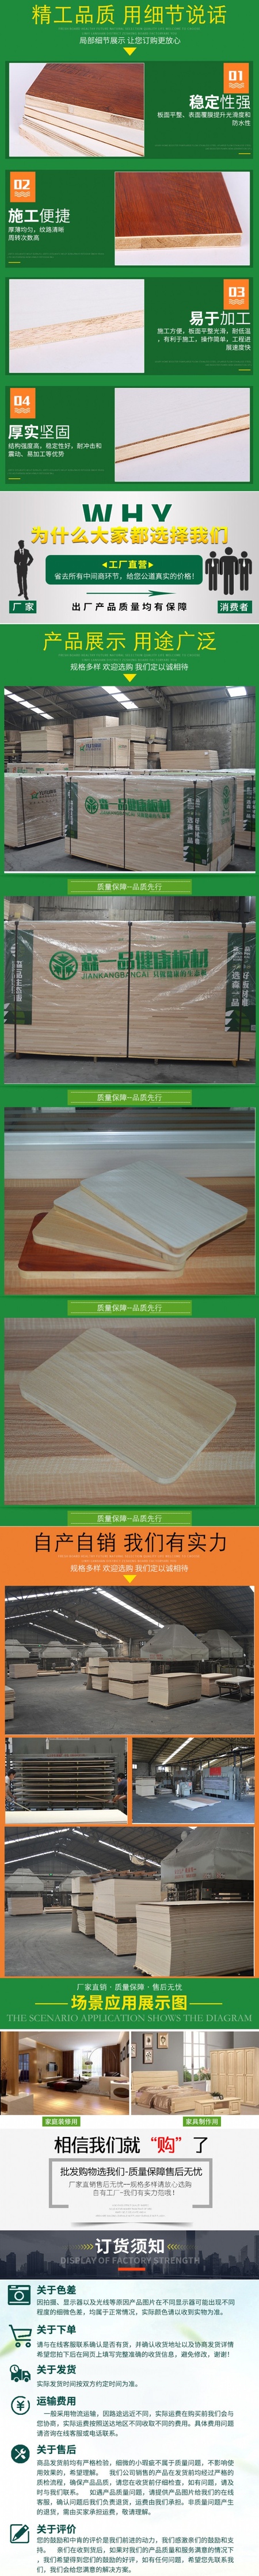 中国板材十大品牌 生态板厂 可按照客户要求定制 量大优惠 森一品生态板